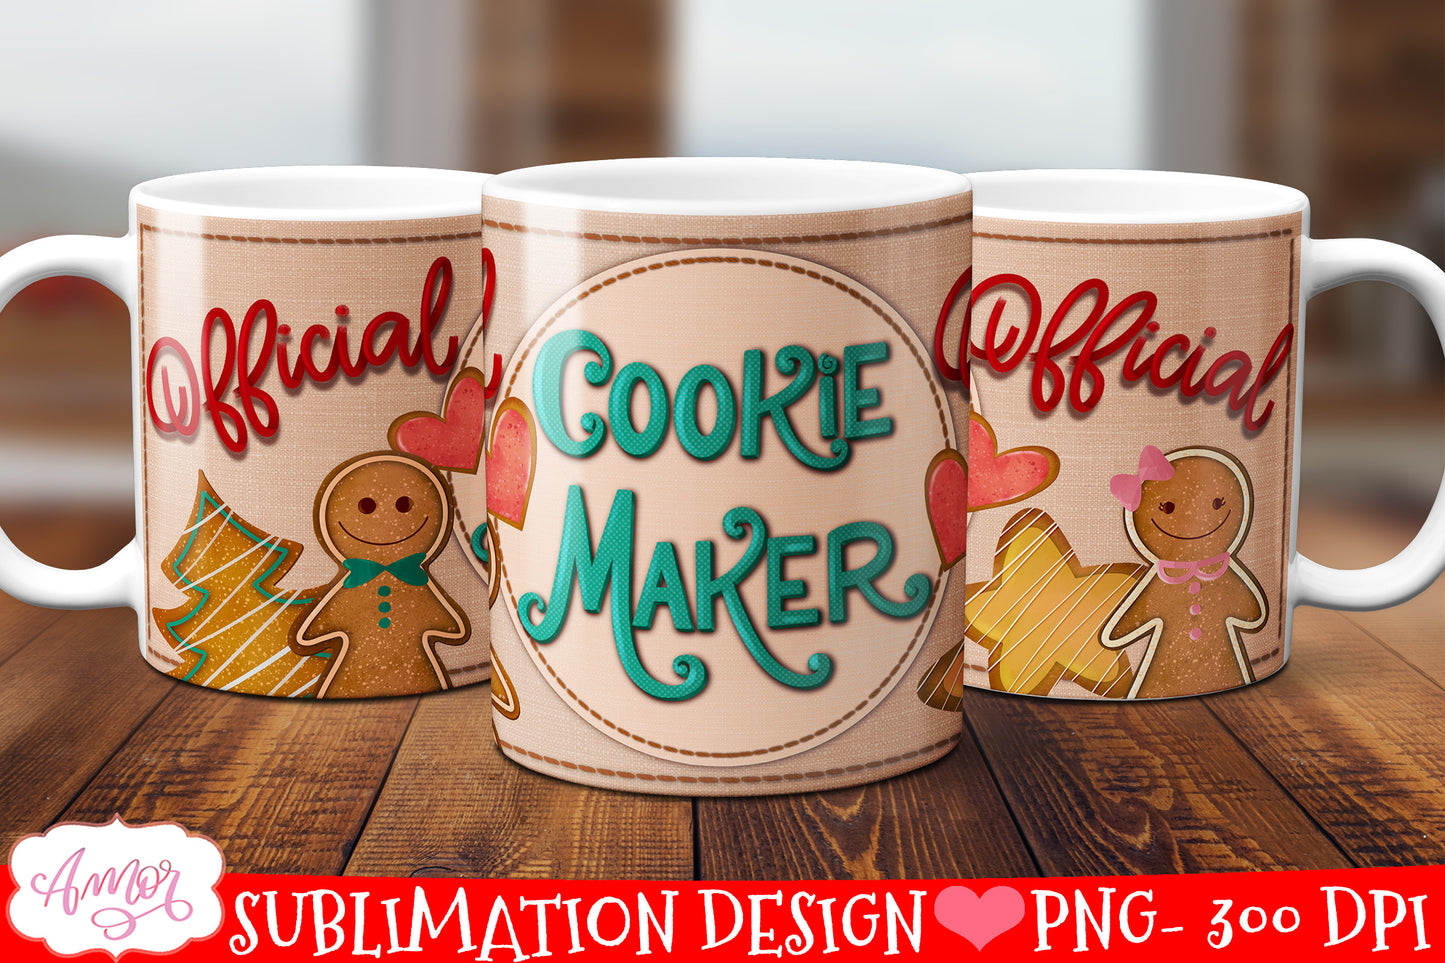 Official cookie maker mug